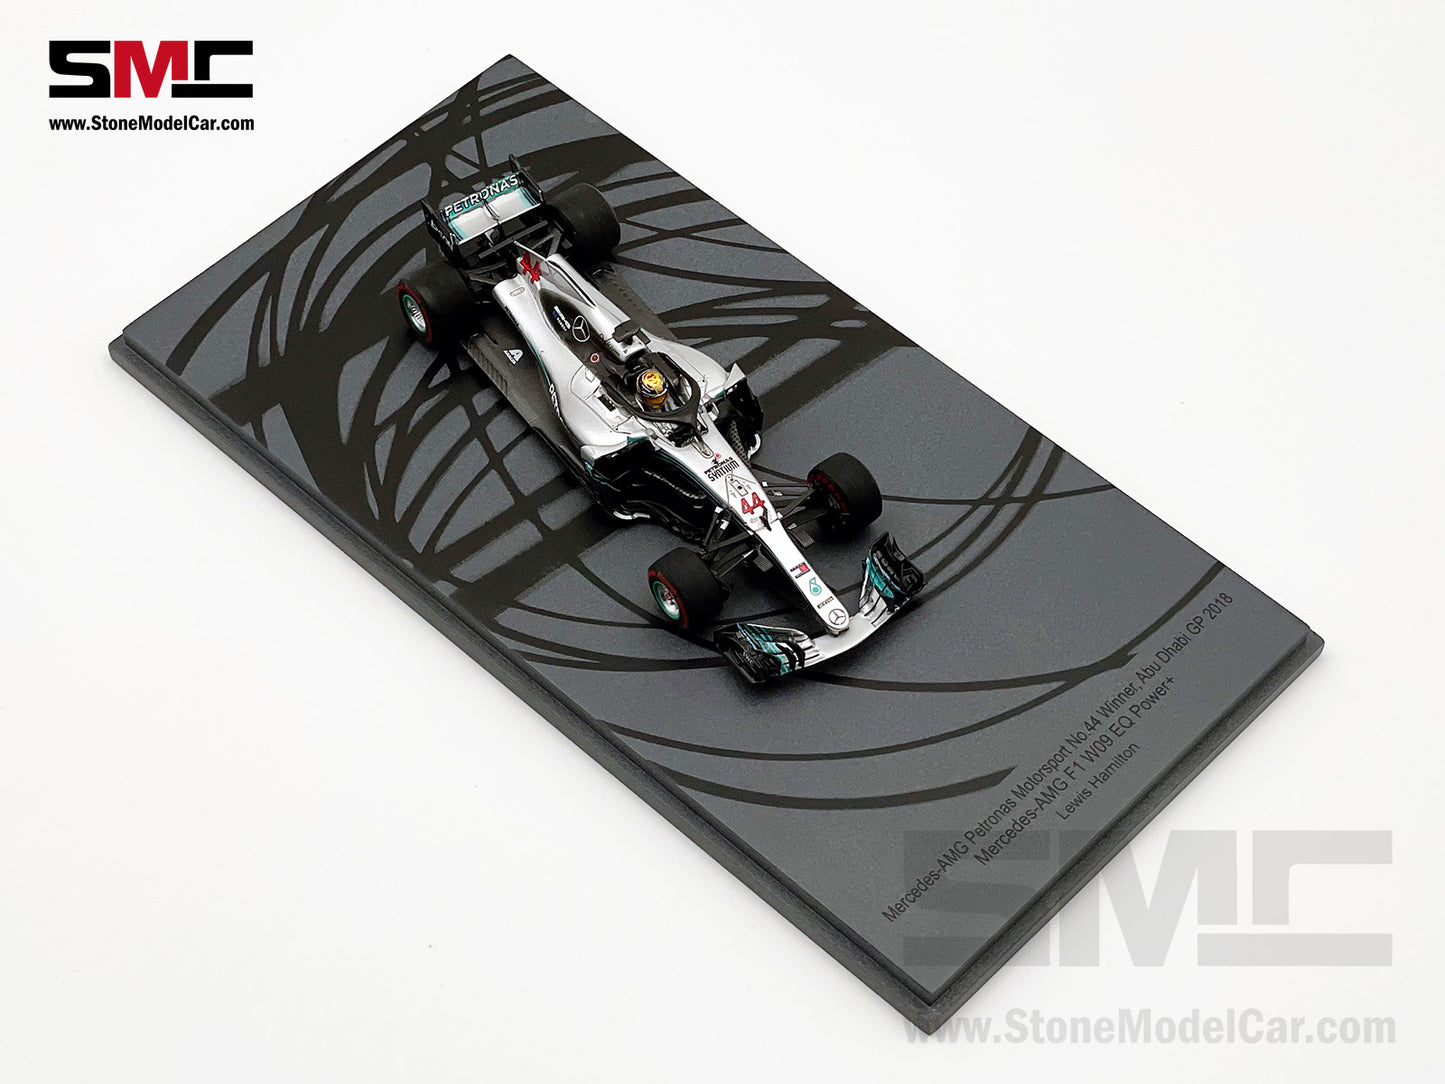 2018 5x World Champion Mercedes F1 W09 #44 Lewis Hamilton Abu Dhabi GP 1:43 Spark